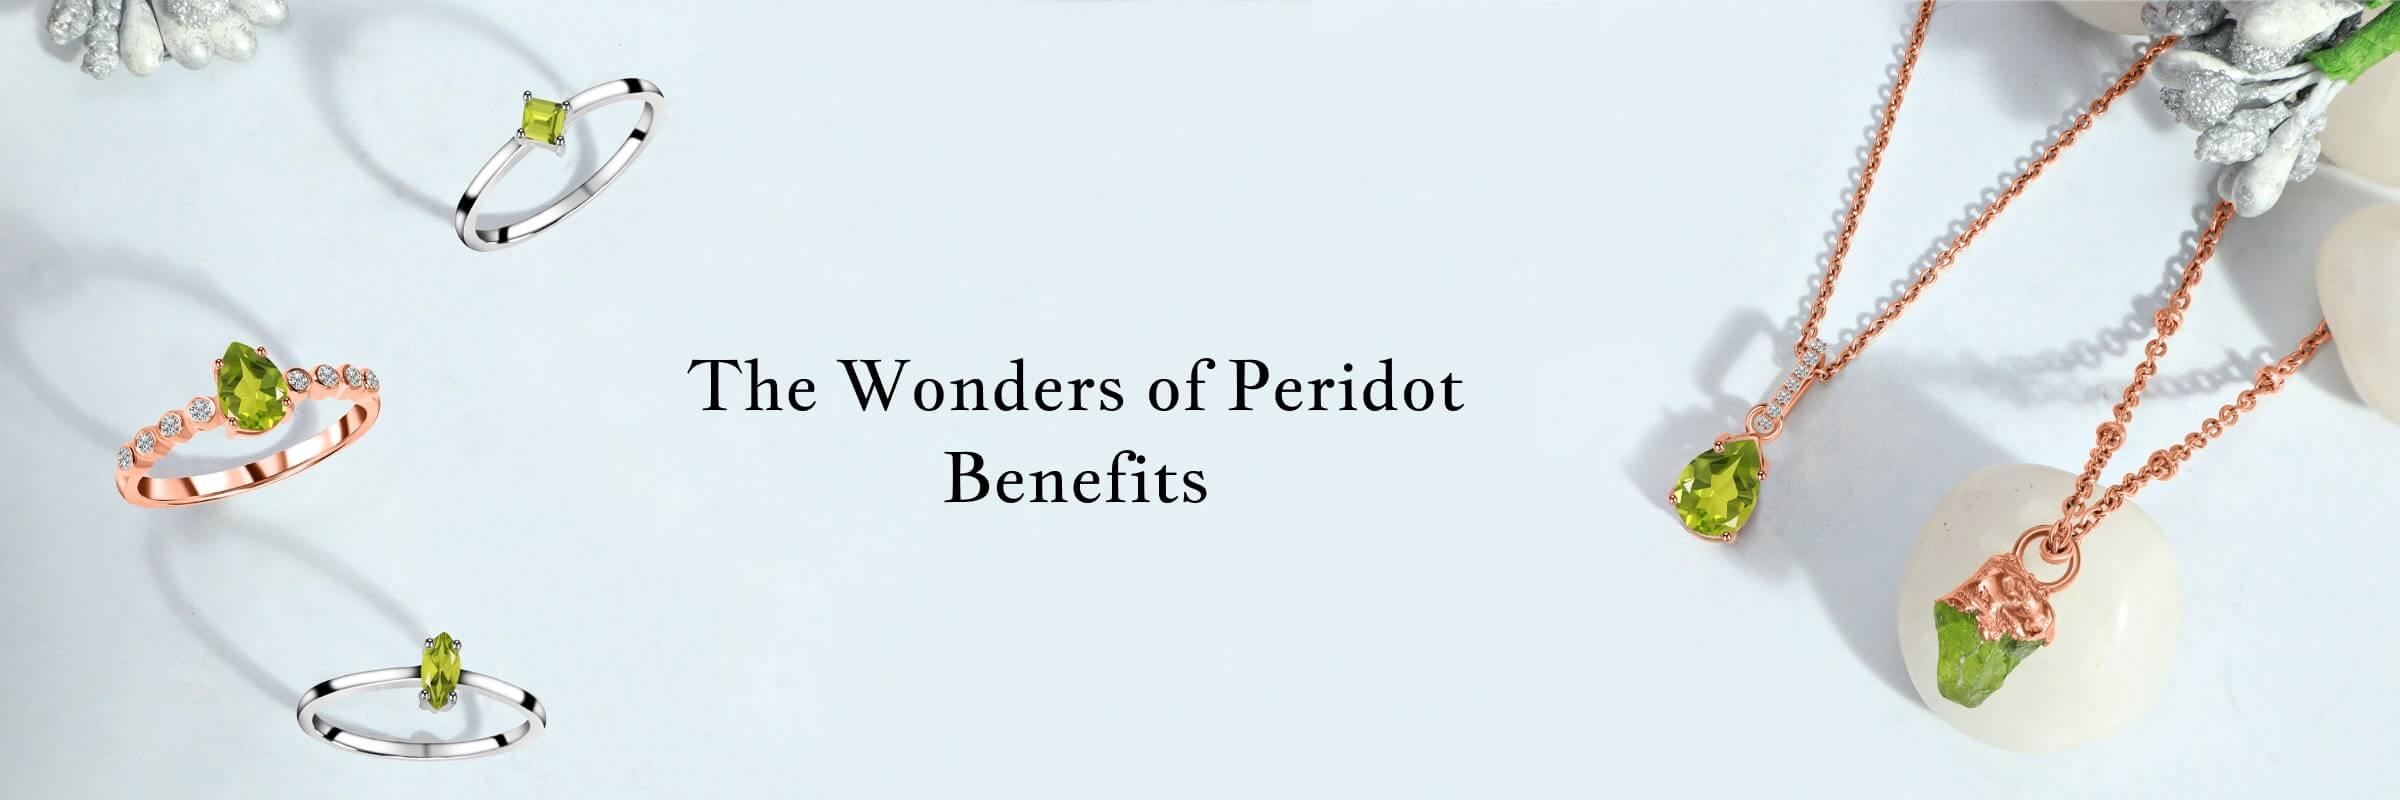 Peridot Benefits